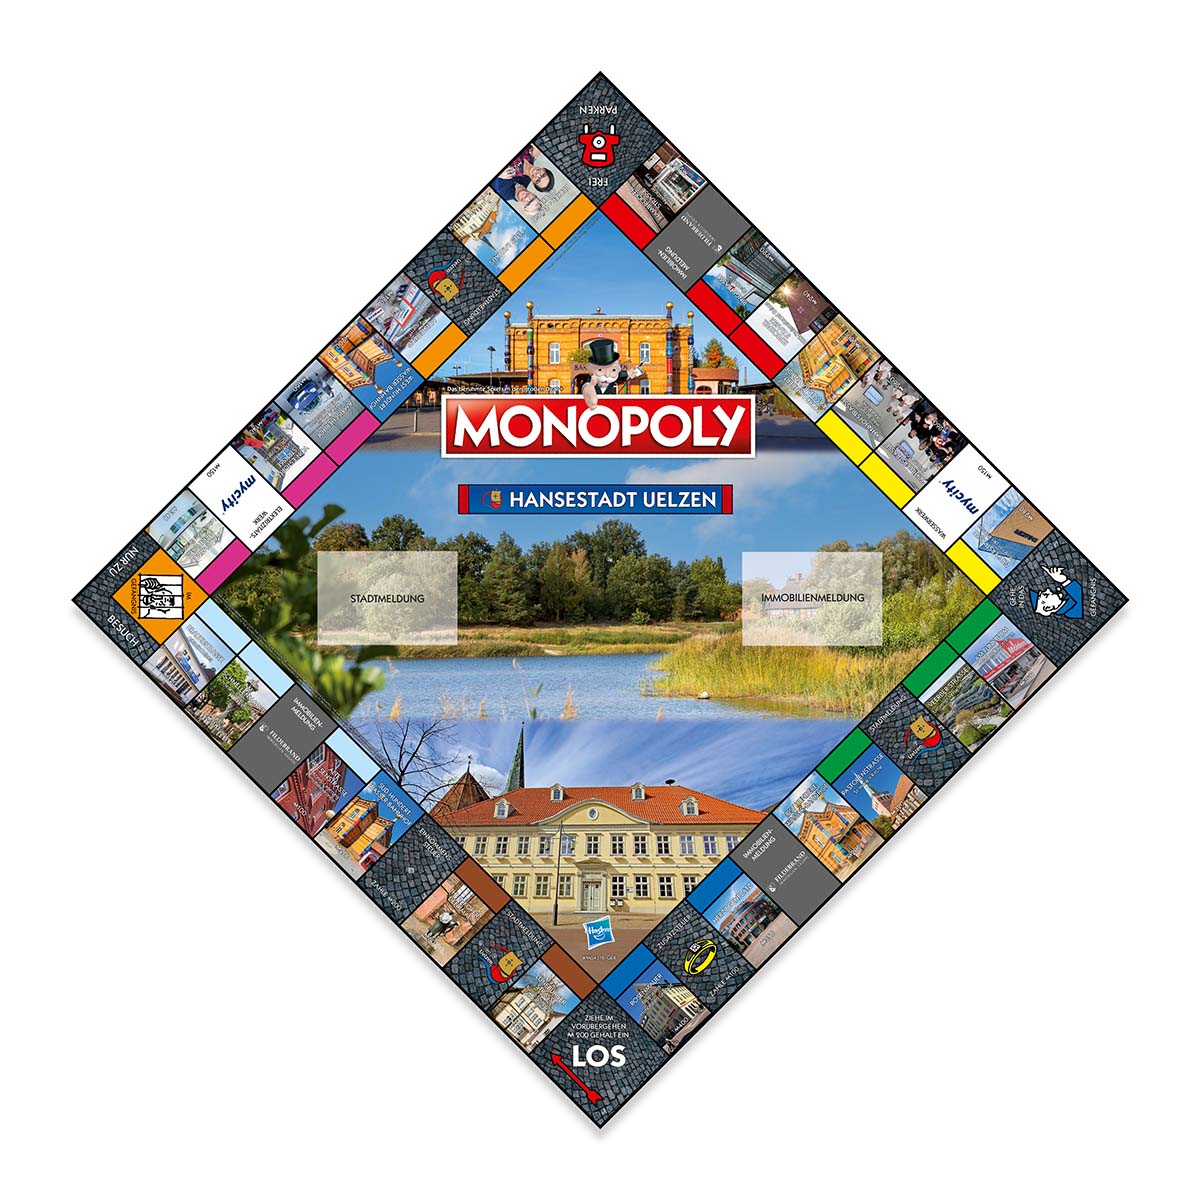 Monopoly - Hansestadt Uelzen